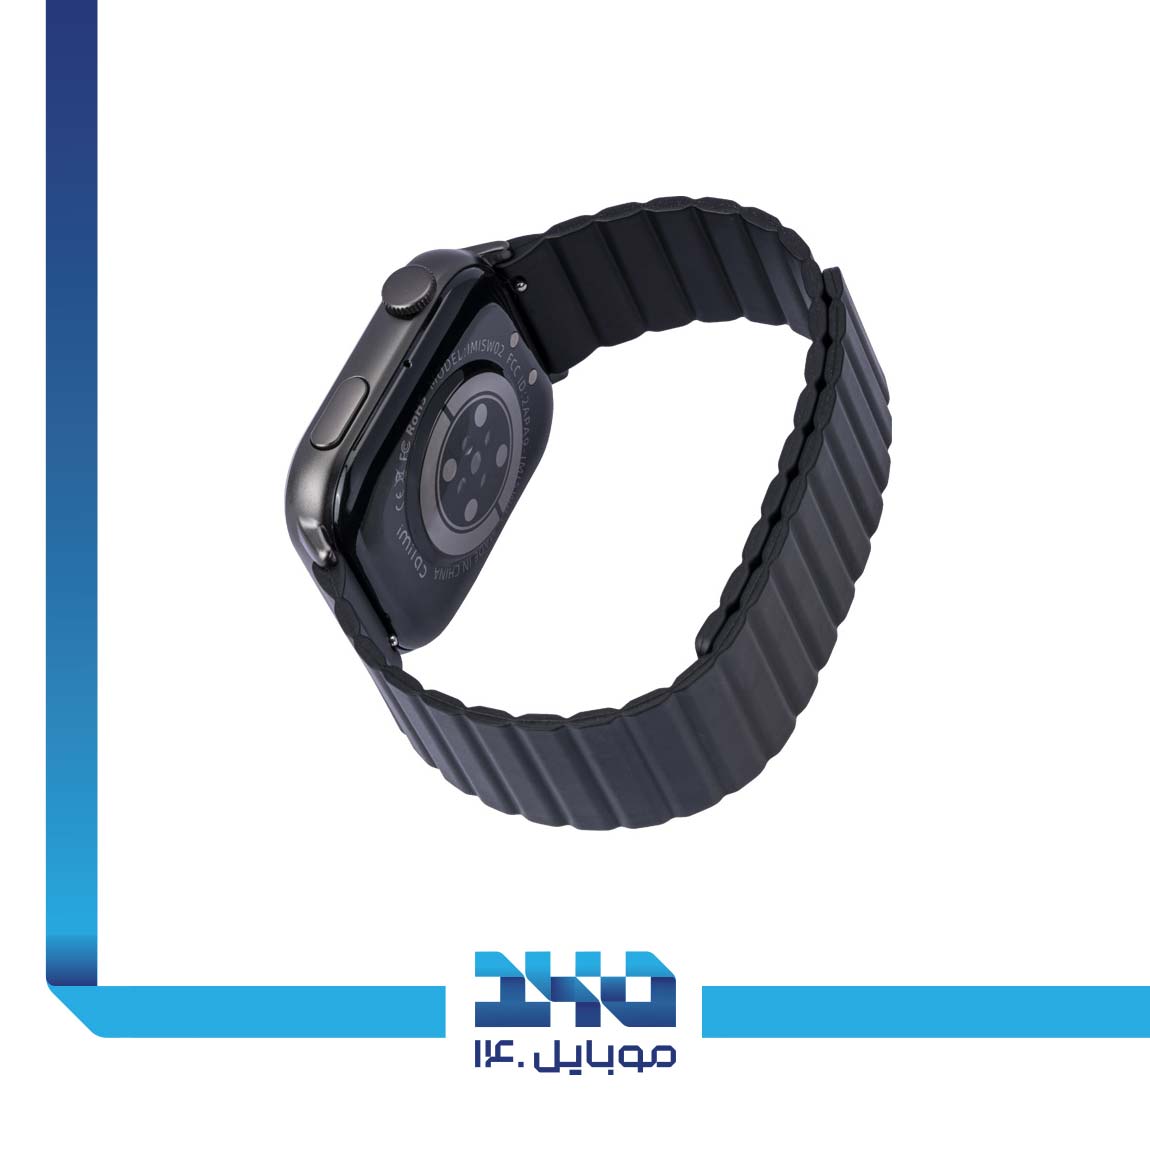 Imilab W02 smart watch 4